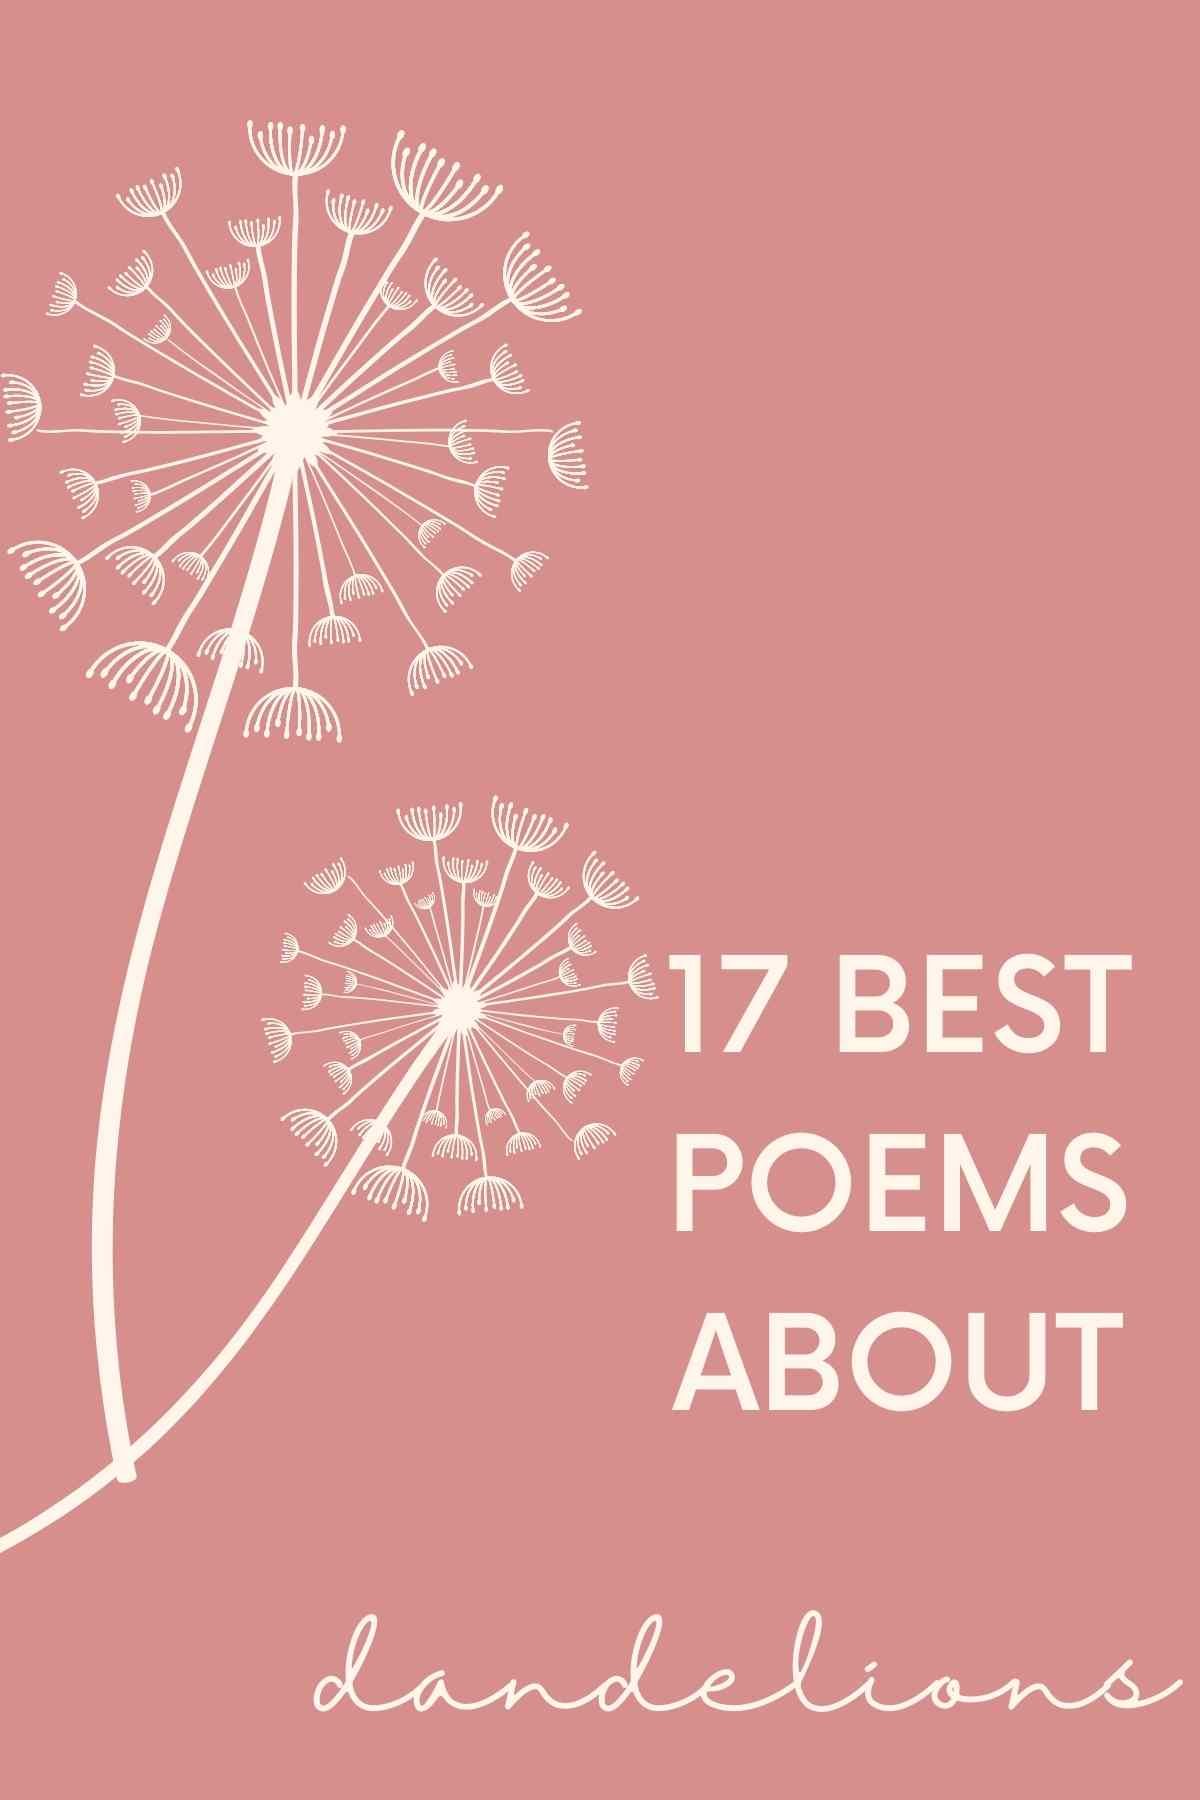 Dandelions in poetry 